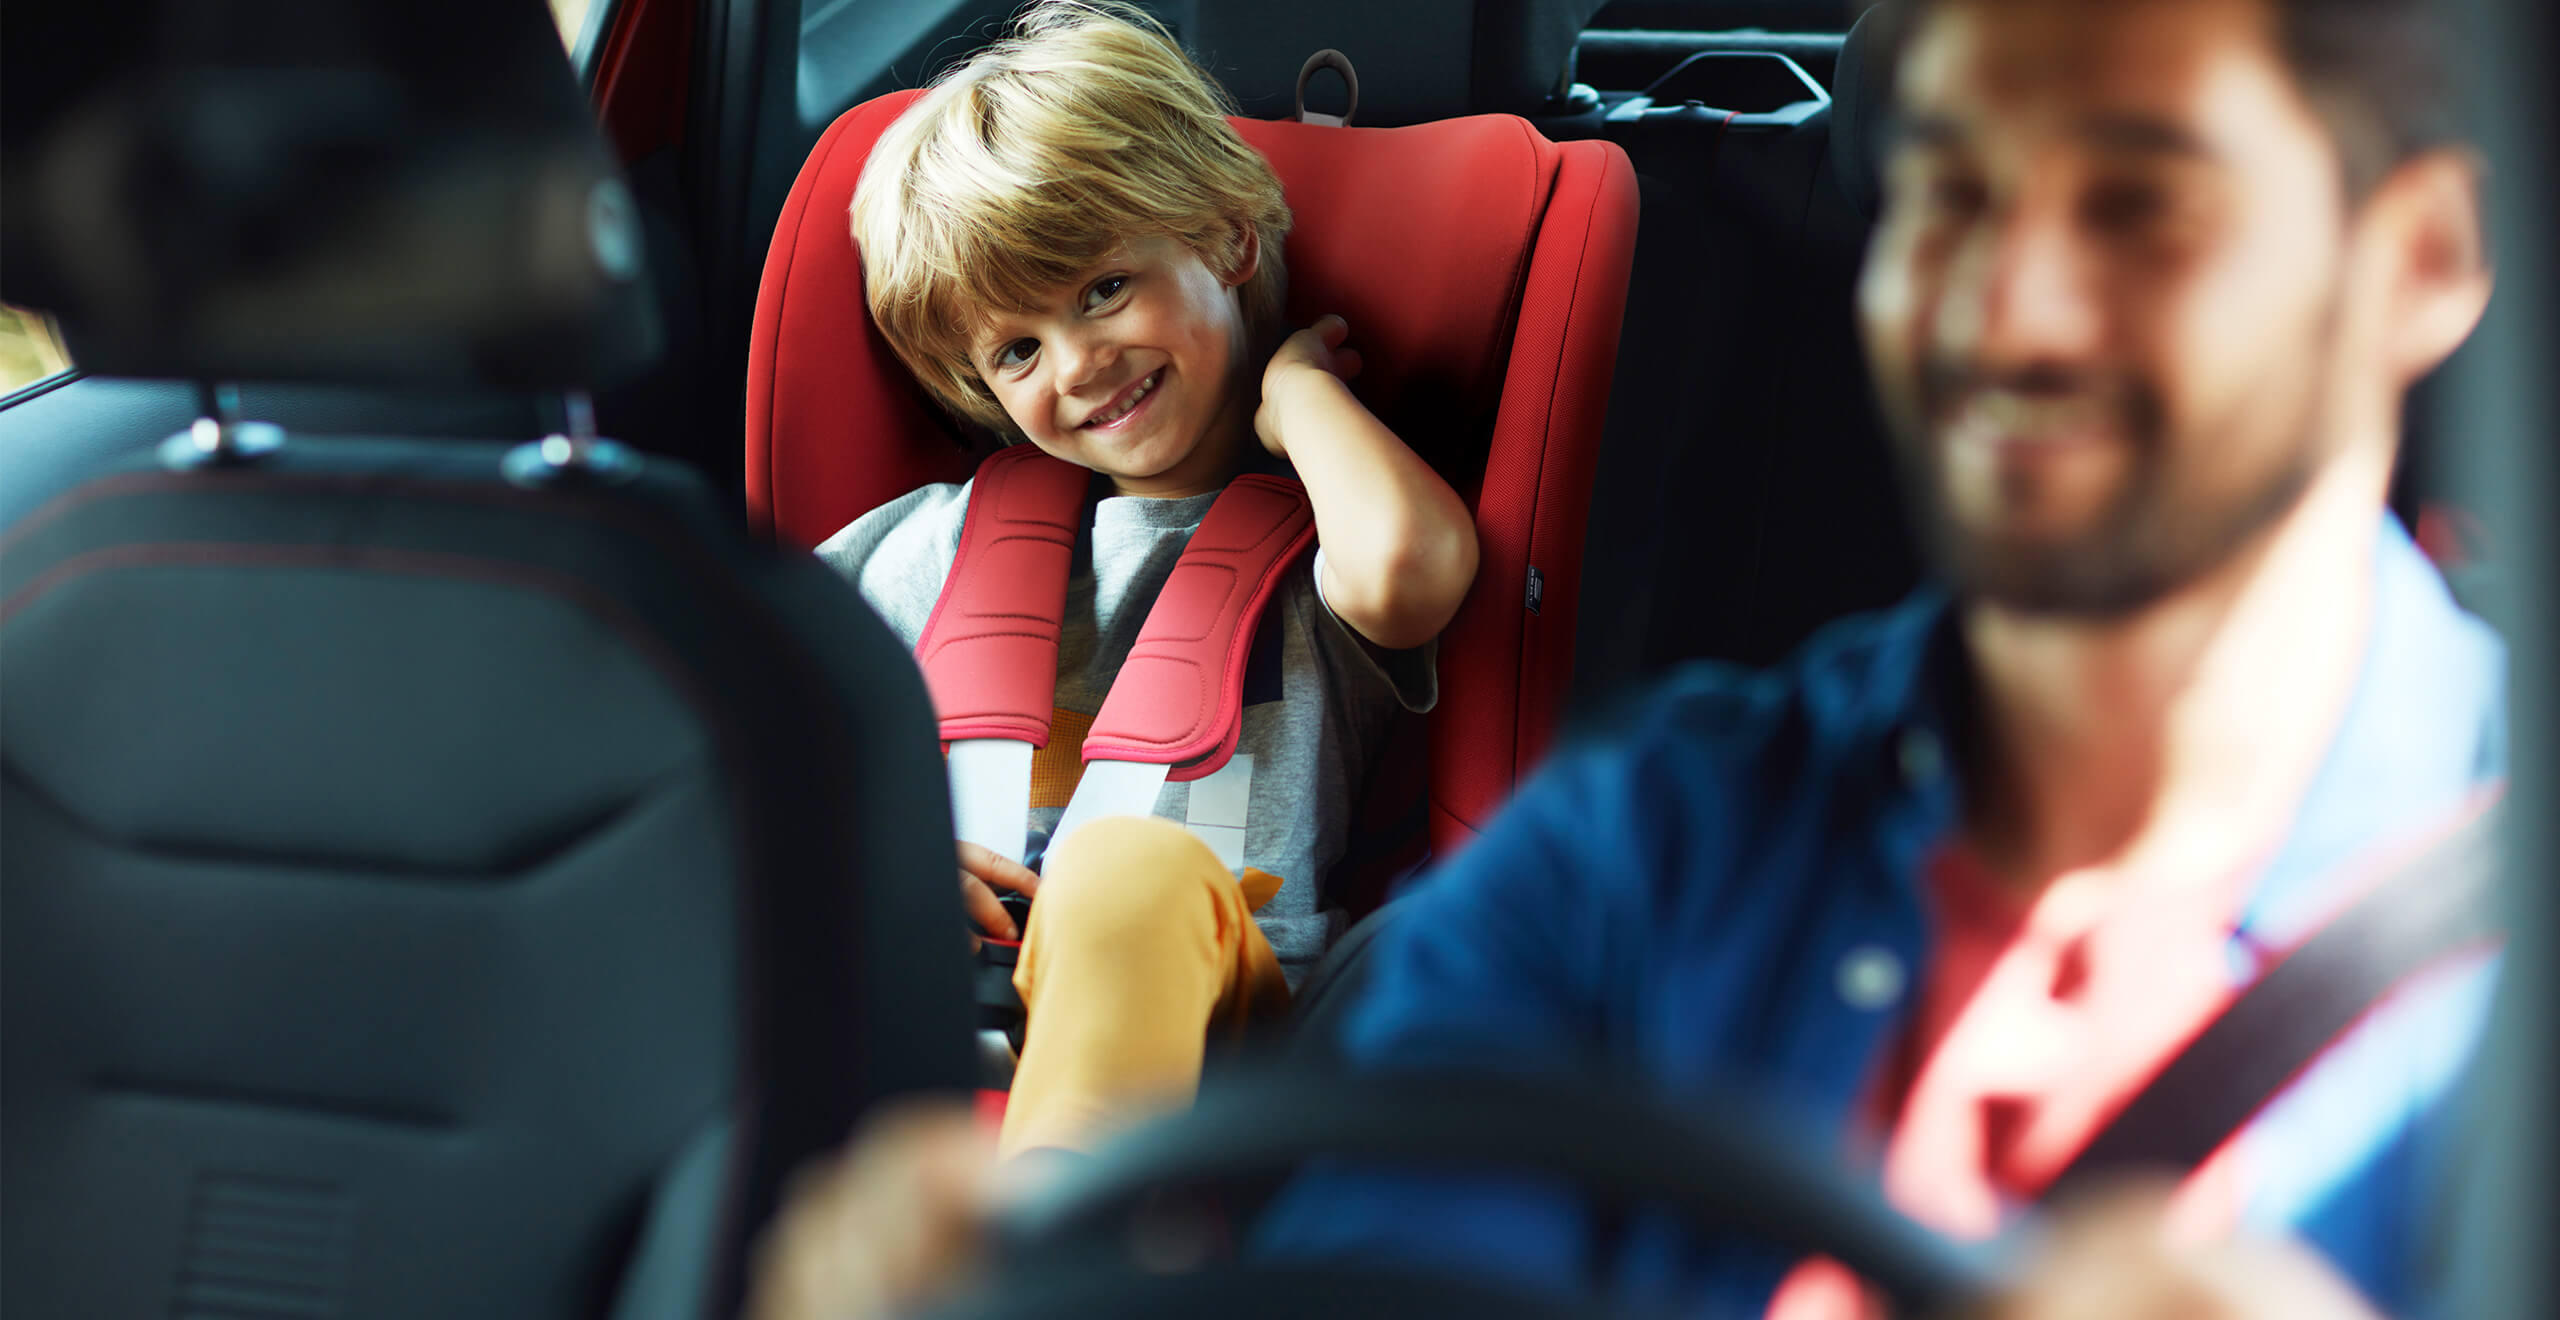 SEAT Arona bērnu sēdeklis SEAT drošības funkcijas.  Attēlo bērnu ar Euro NCAP SEAT piecu zvaigžņu drošības līmeni novērtētā SEAT Arona performance